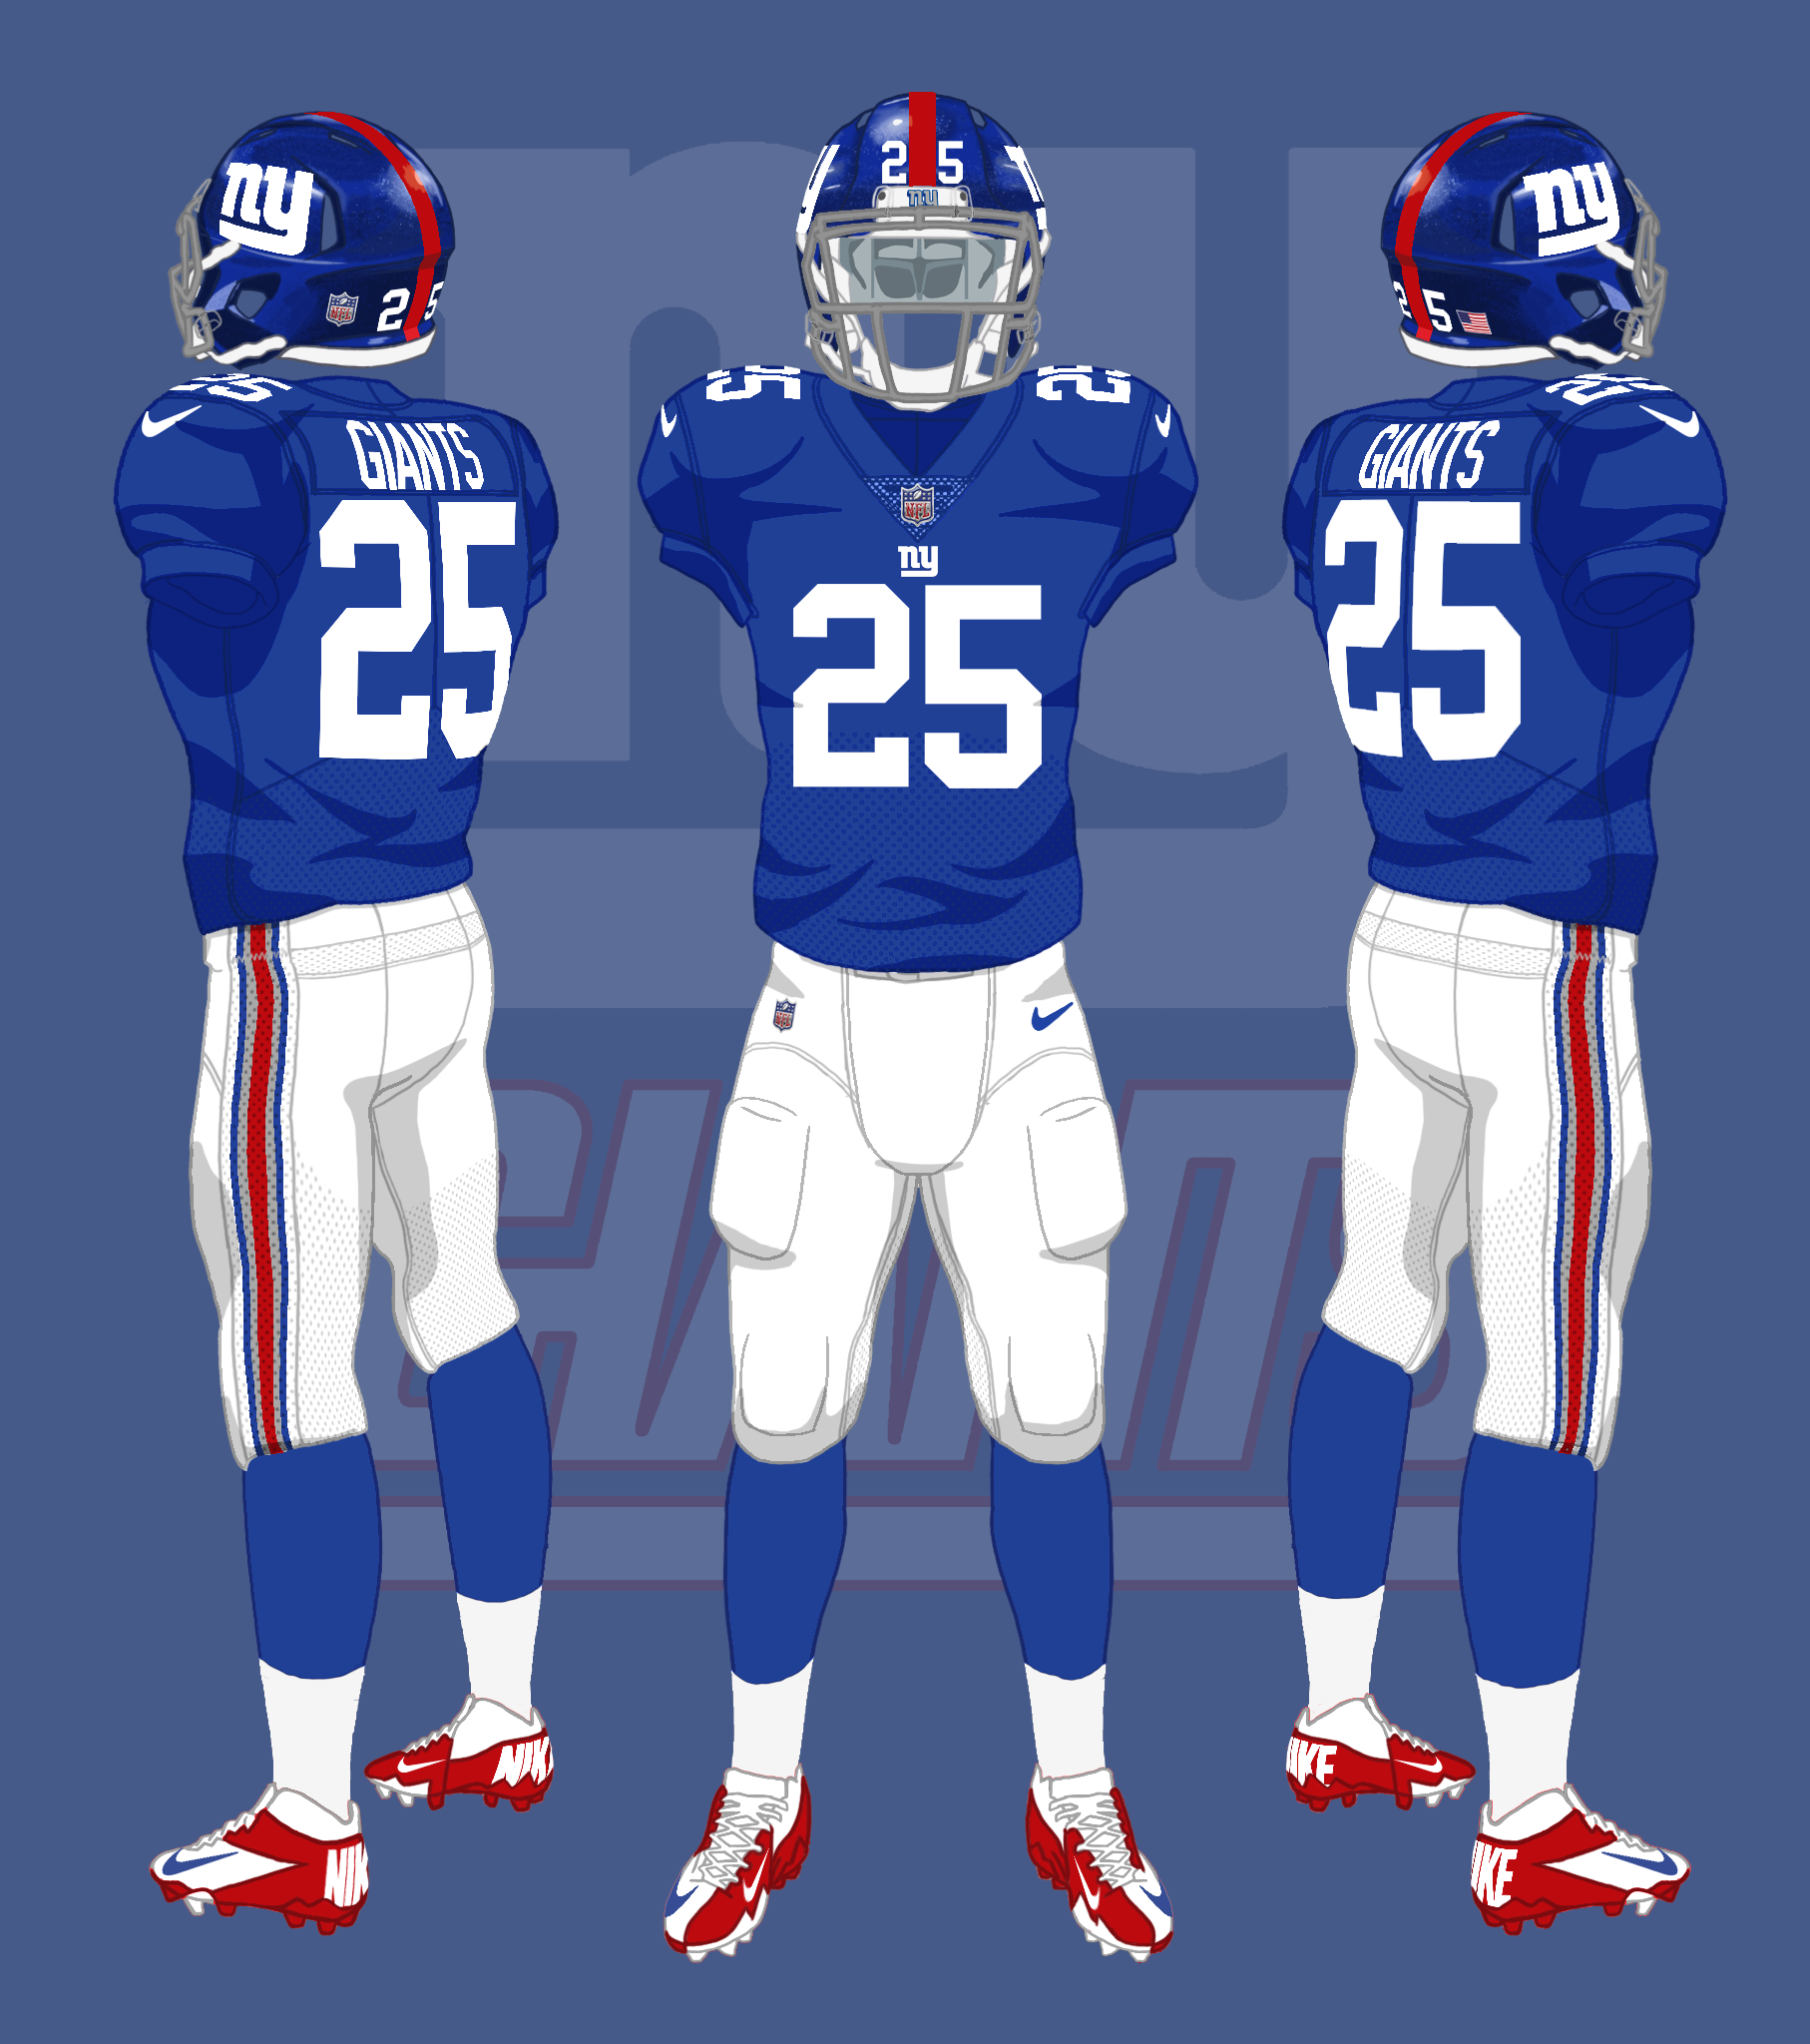 ny giants uniforms 2020